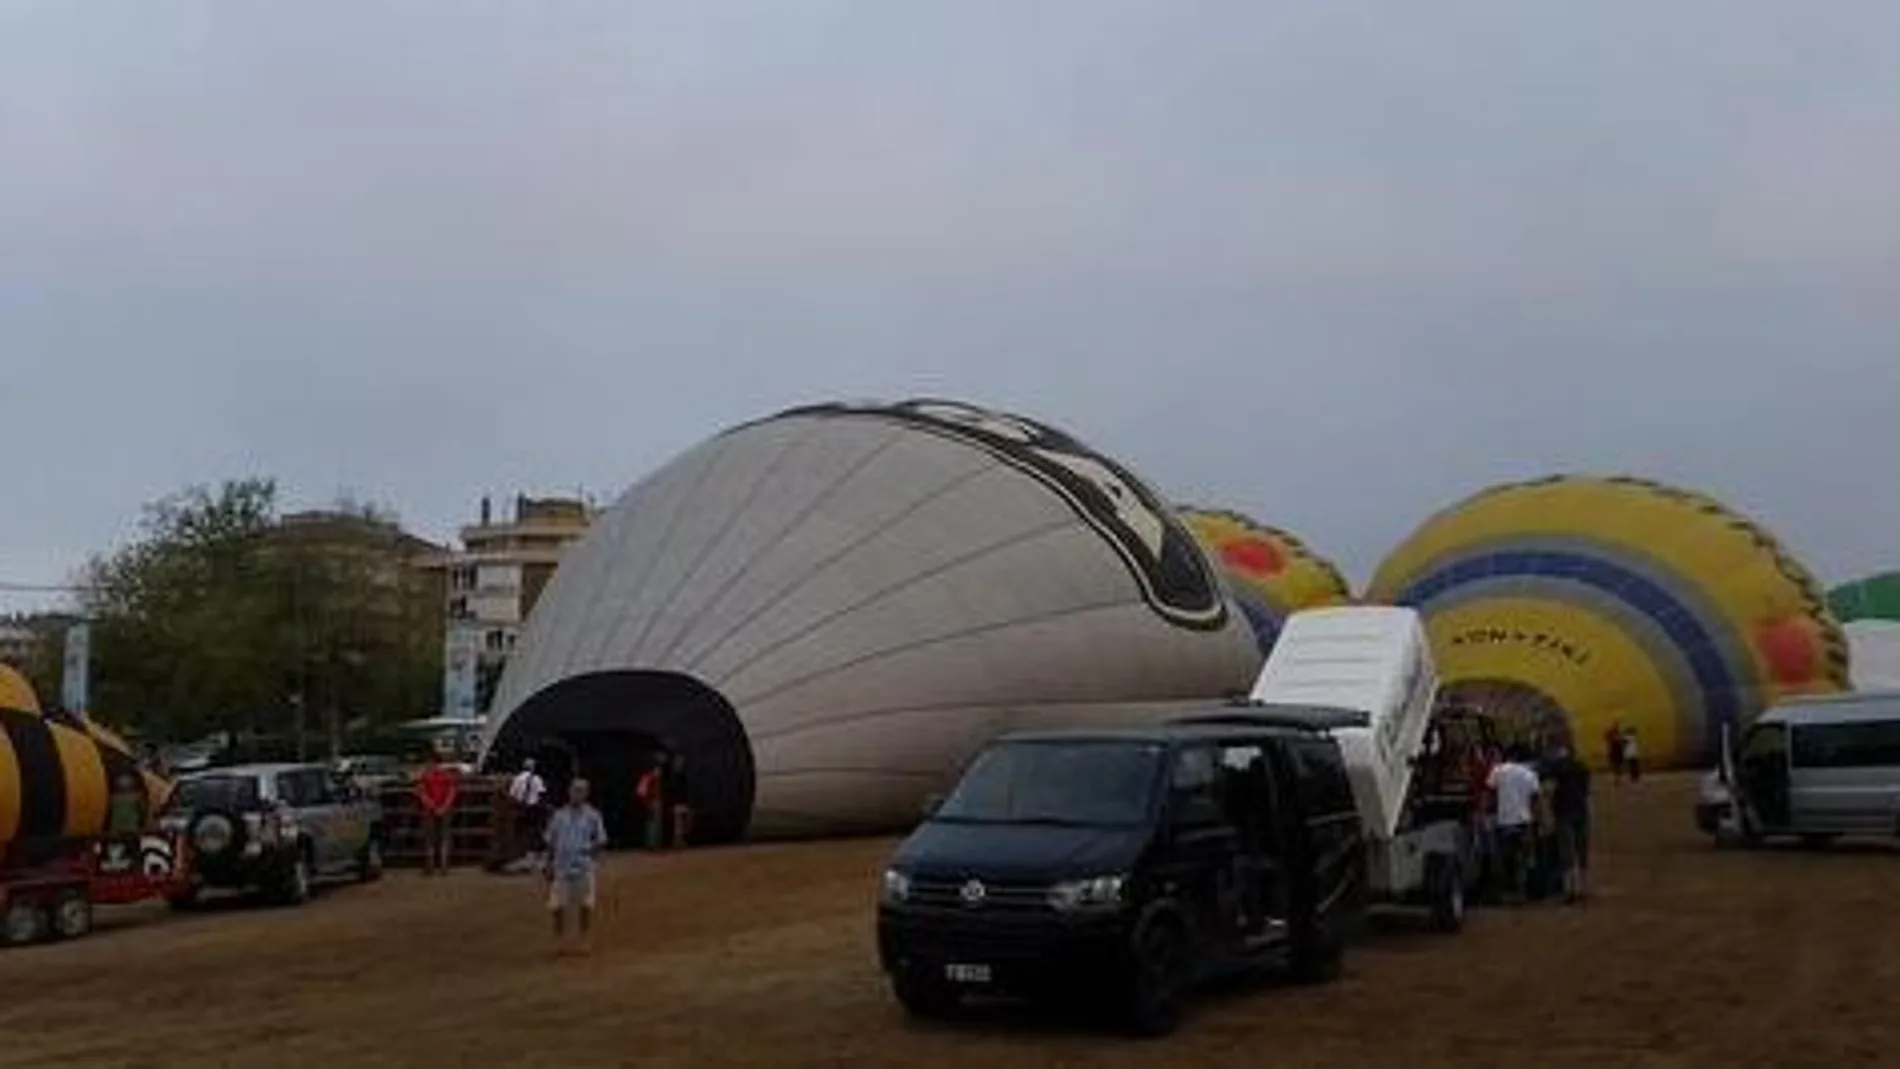 El aparato accidentado participaba en el último vuelo del European Ballon Festival